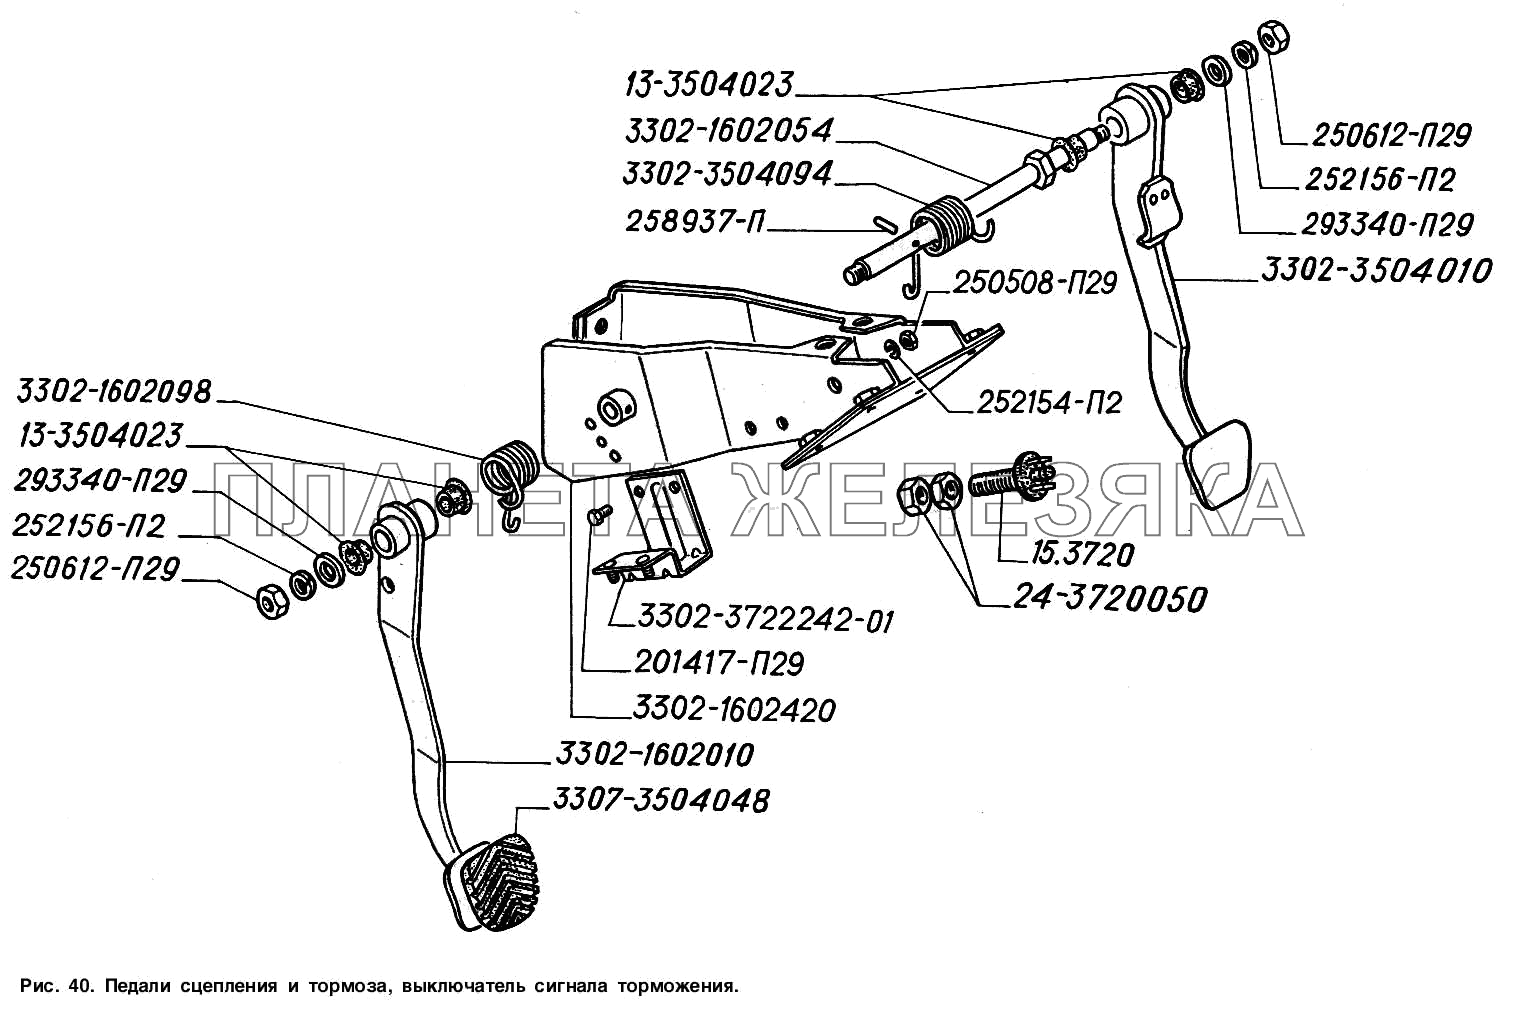 Педали сцепления и тормоза, выключатель сигнала торможения ГАЗ-2217 (Соболь)